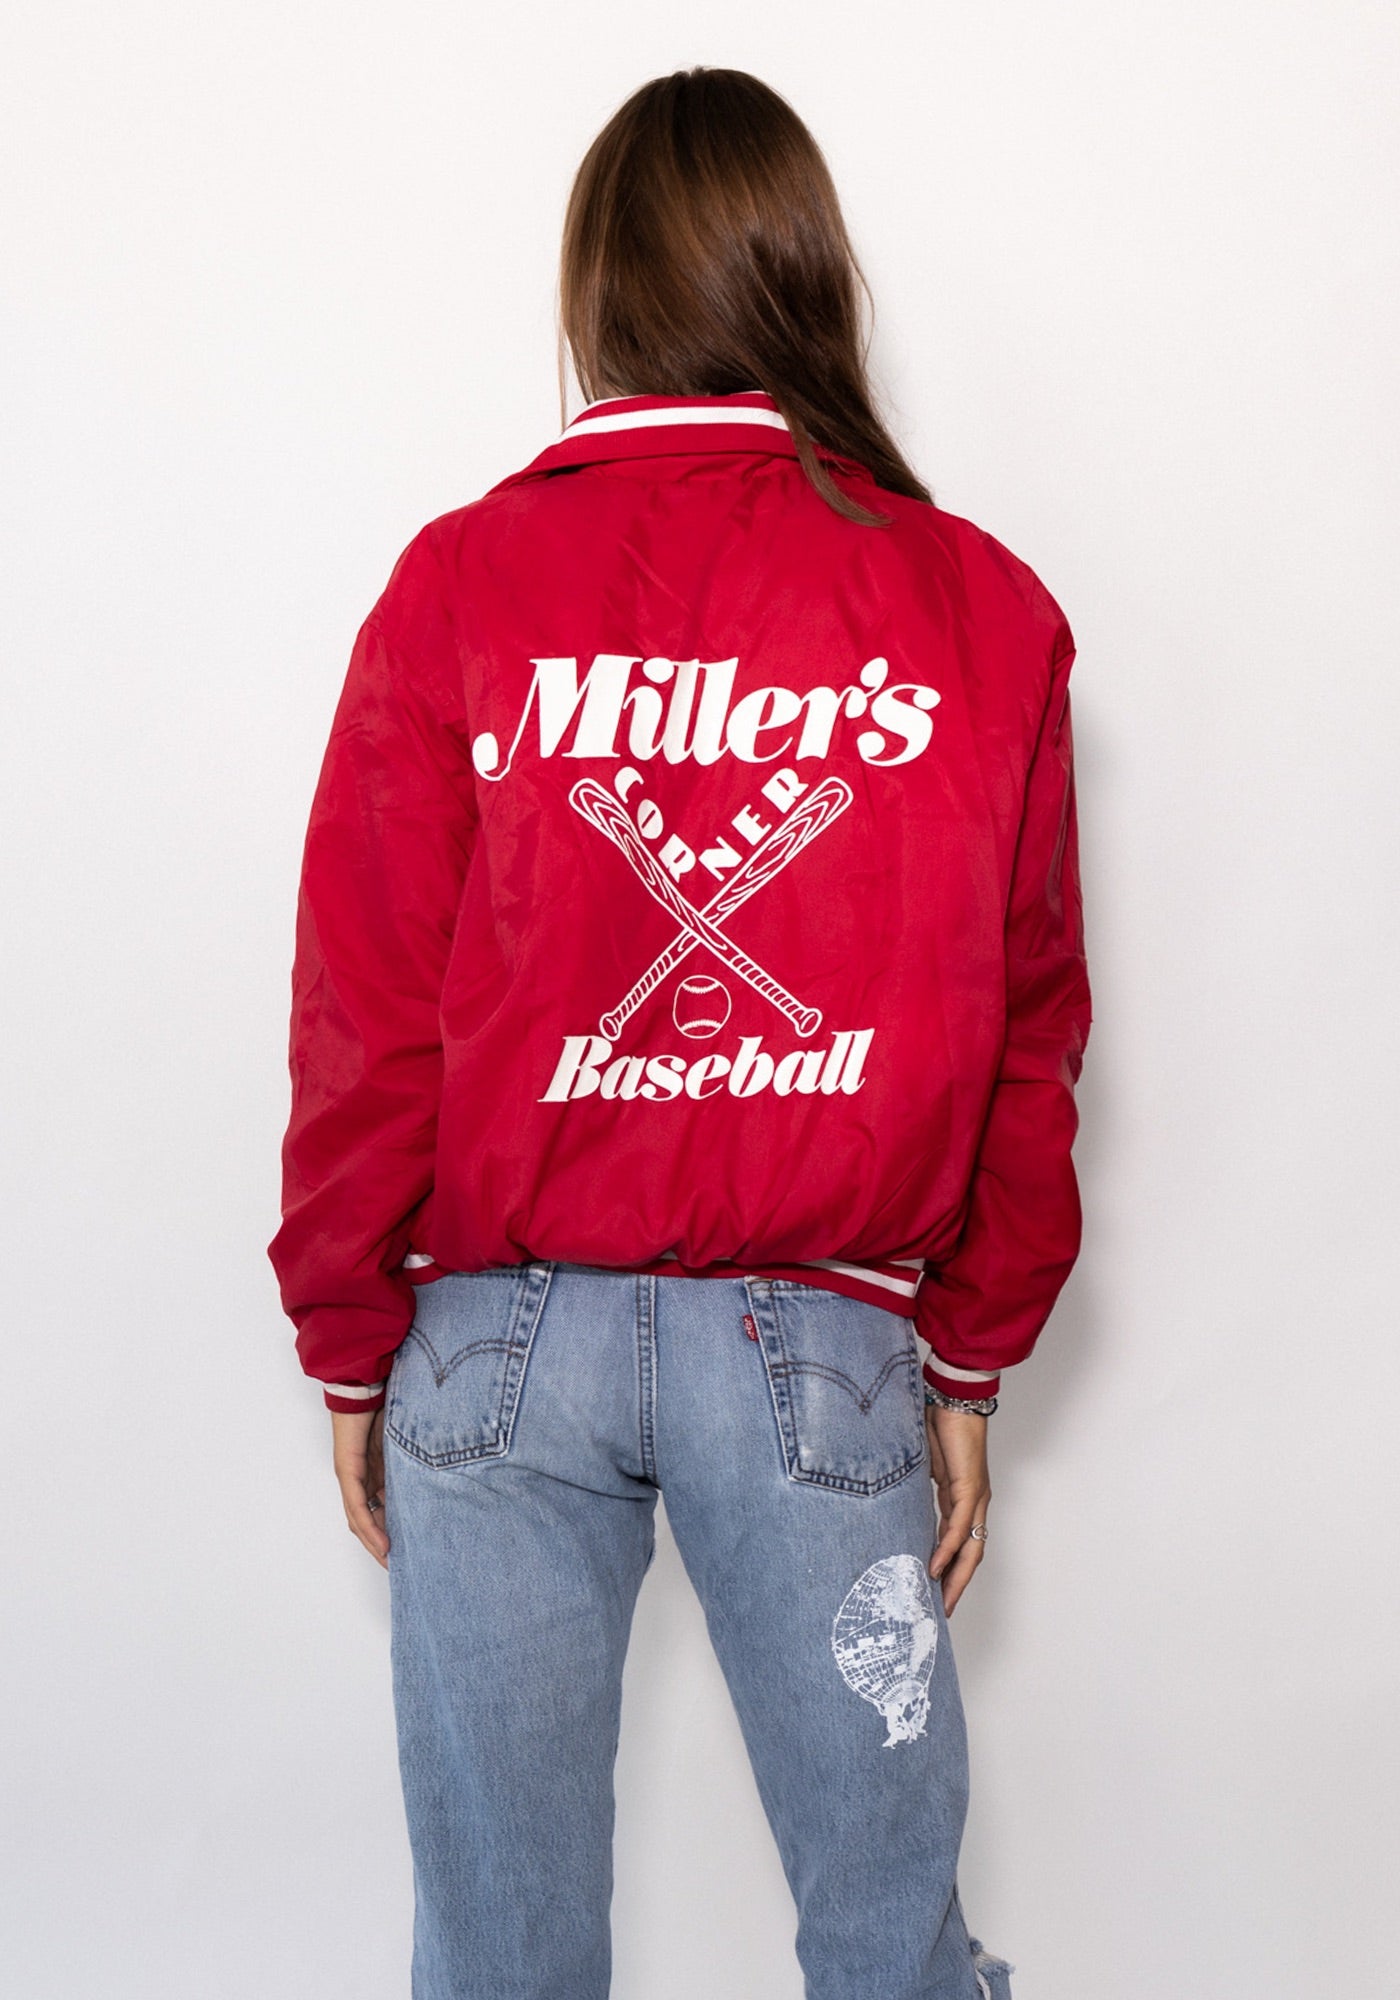 Miller's Baseball Red Bomber Jacket